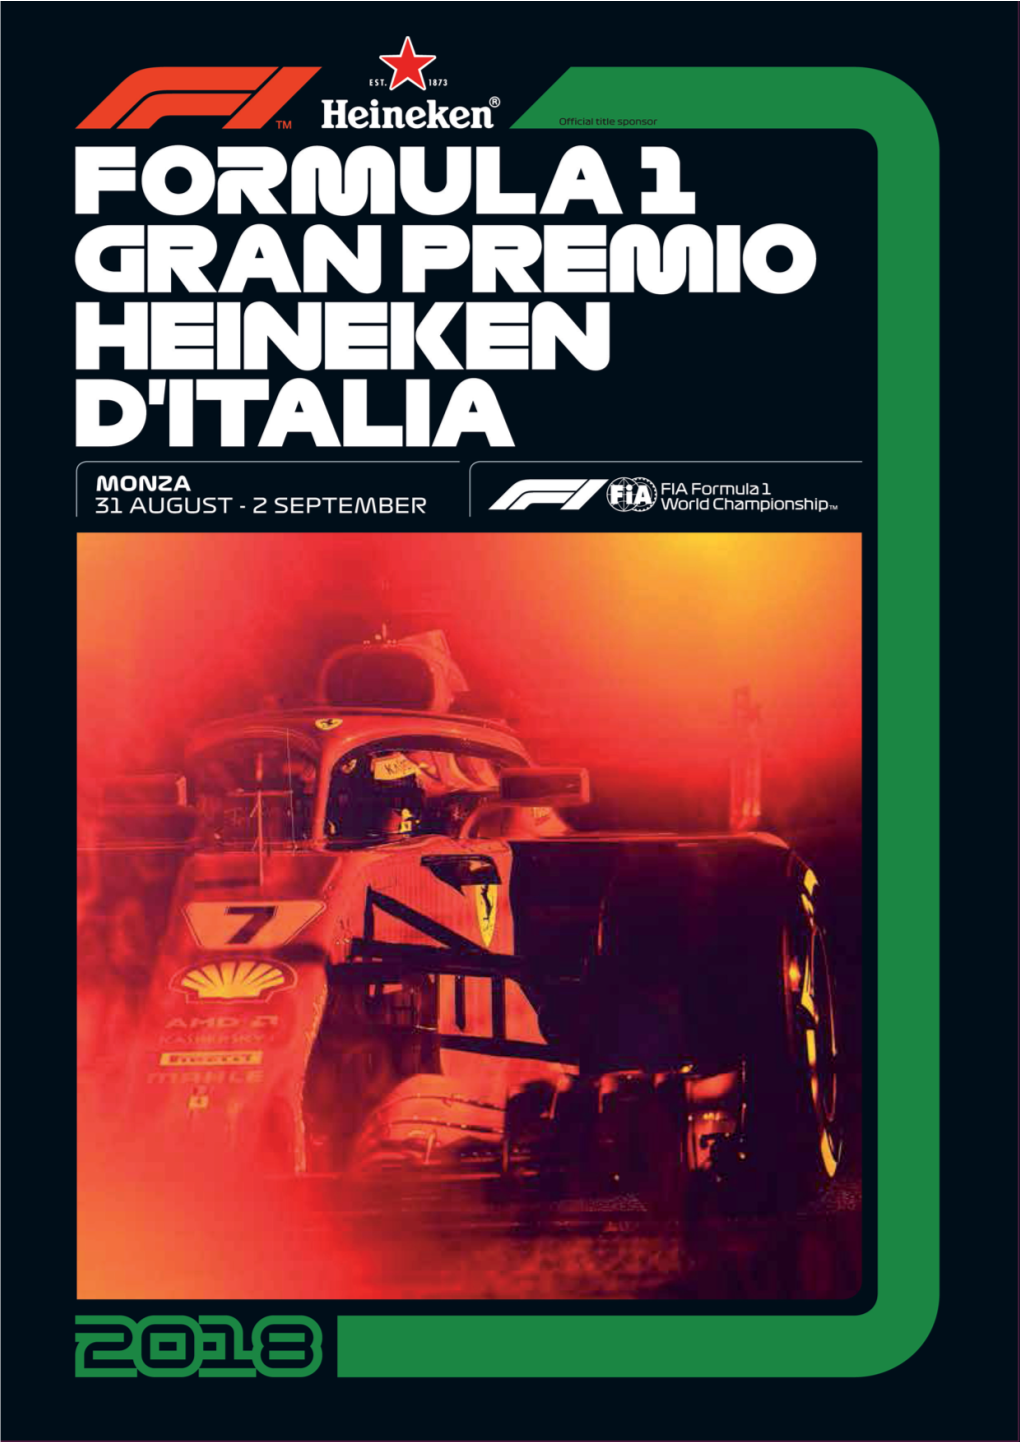 Formula 1 Gran Premio Heineken D'italia 2018